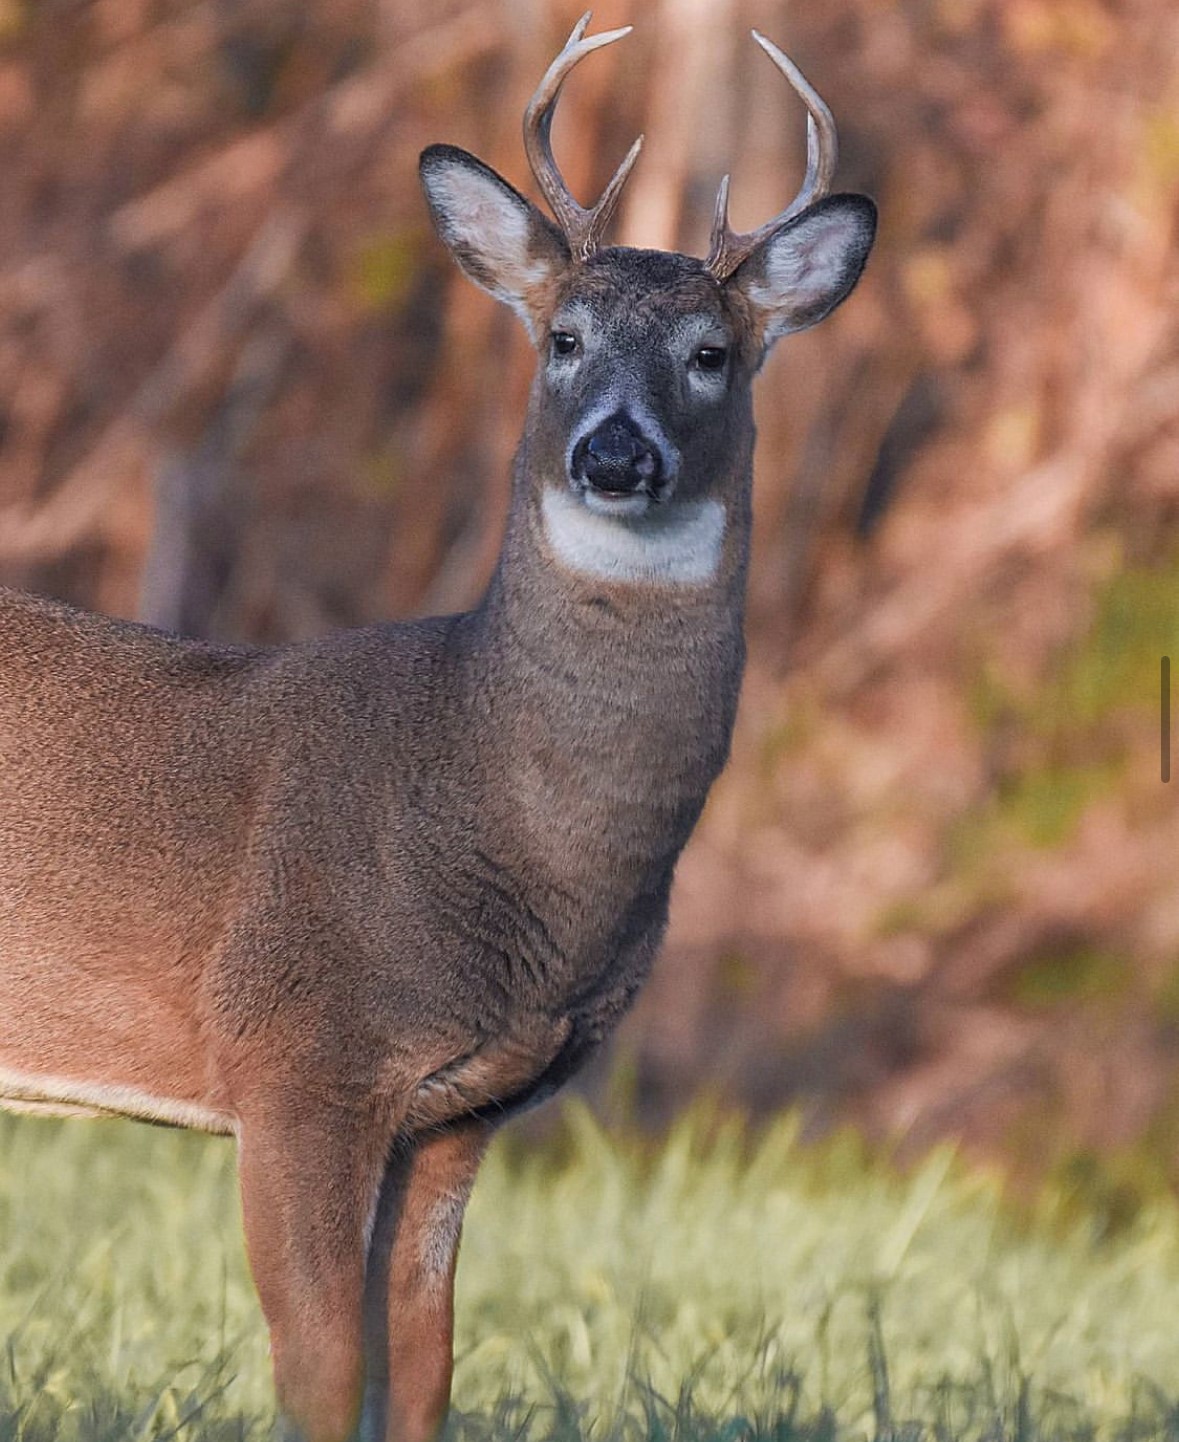 Drivers be alert, deer breeding season is here